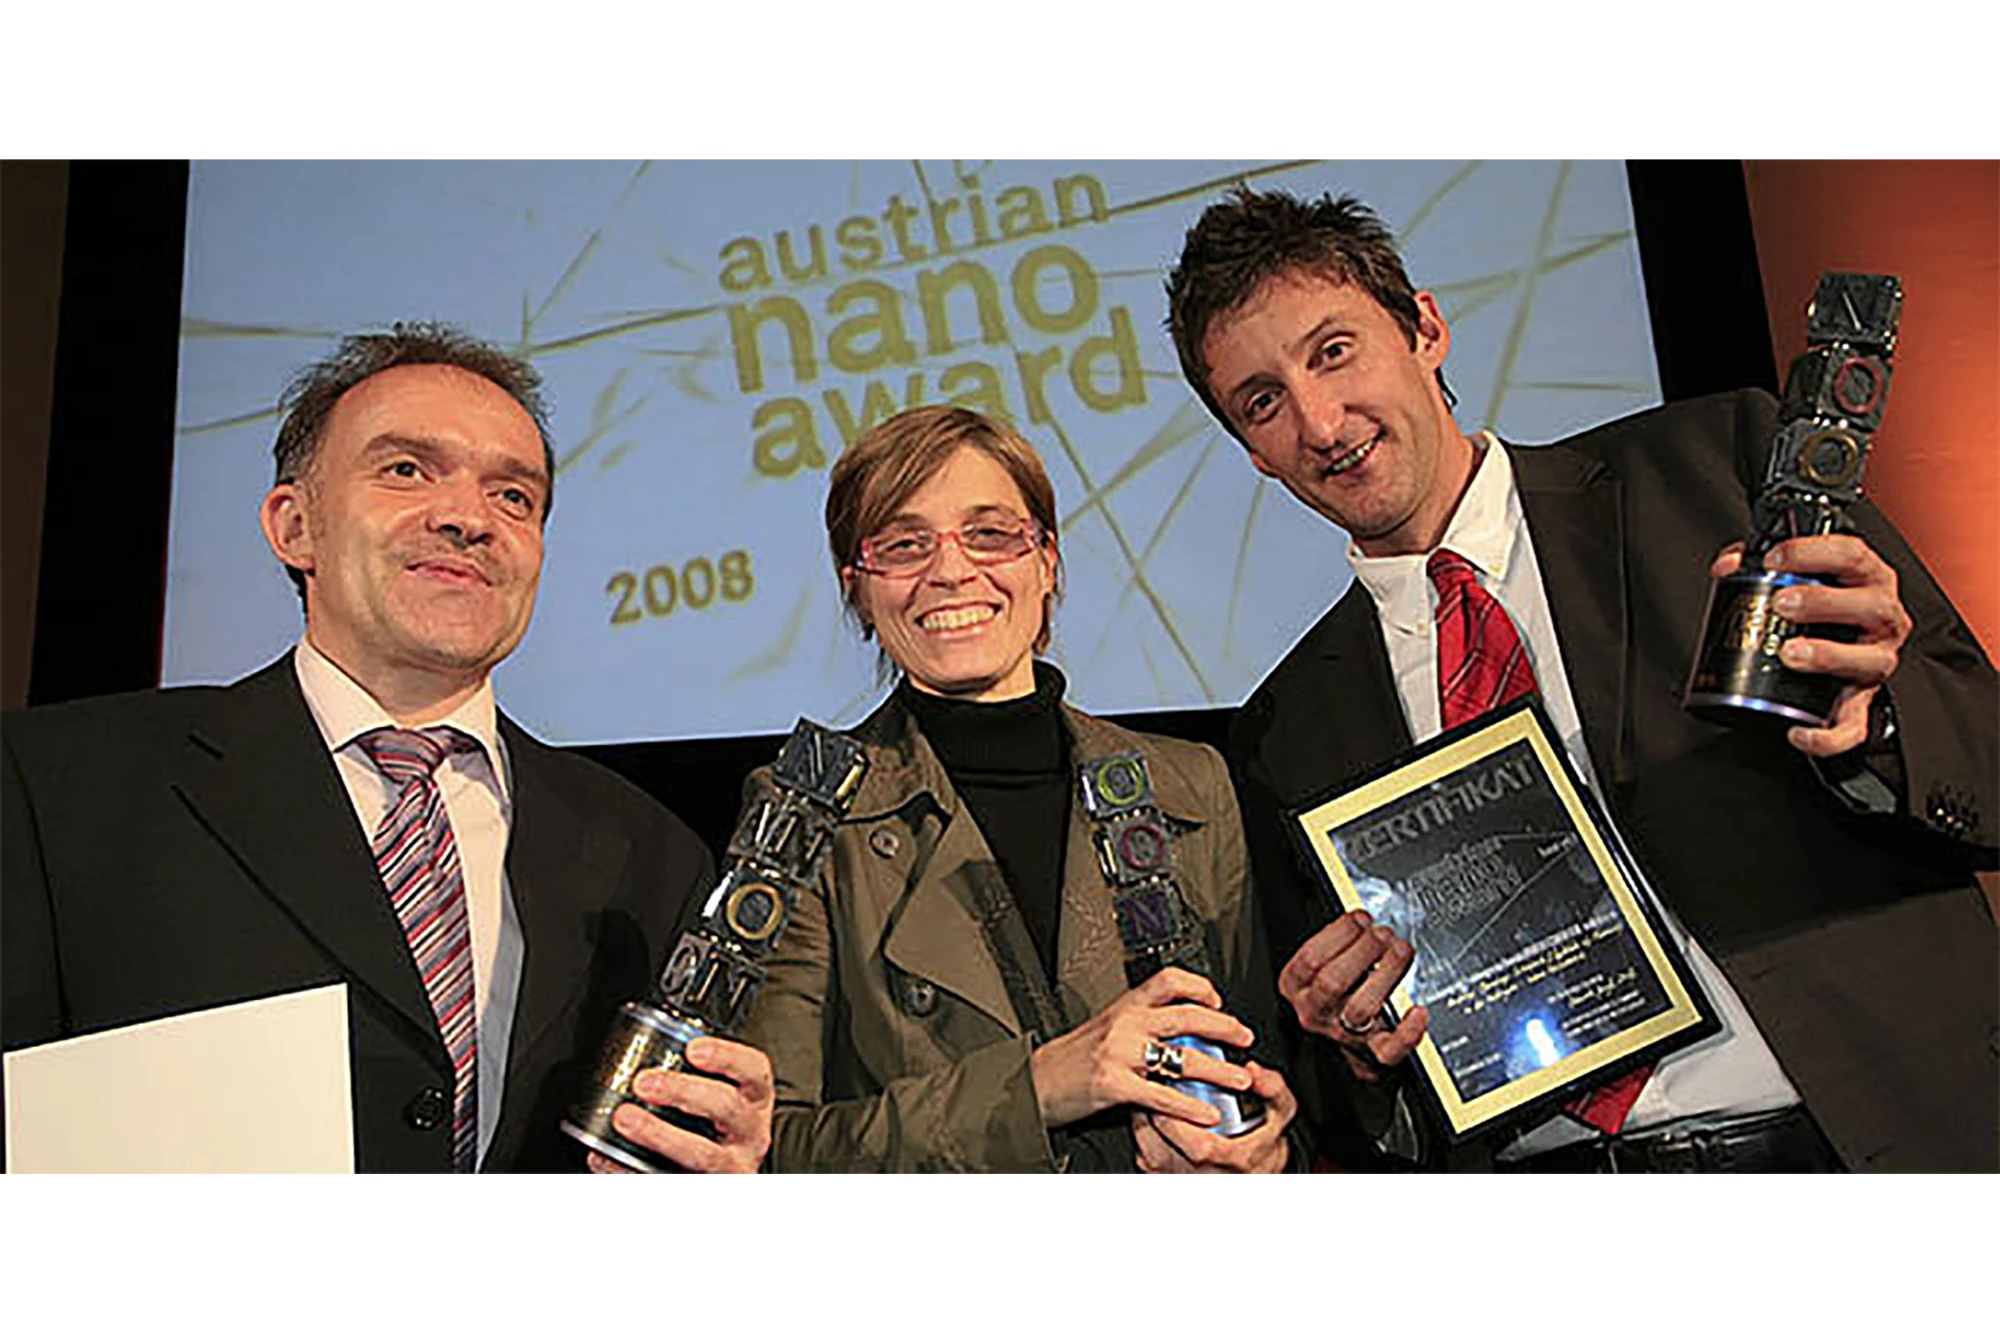 Prêmio Nanobusiness austríaco